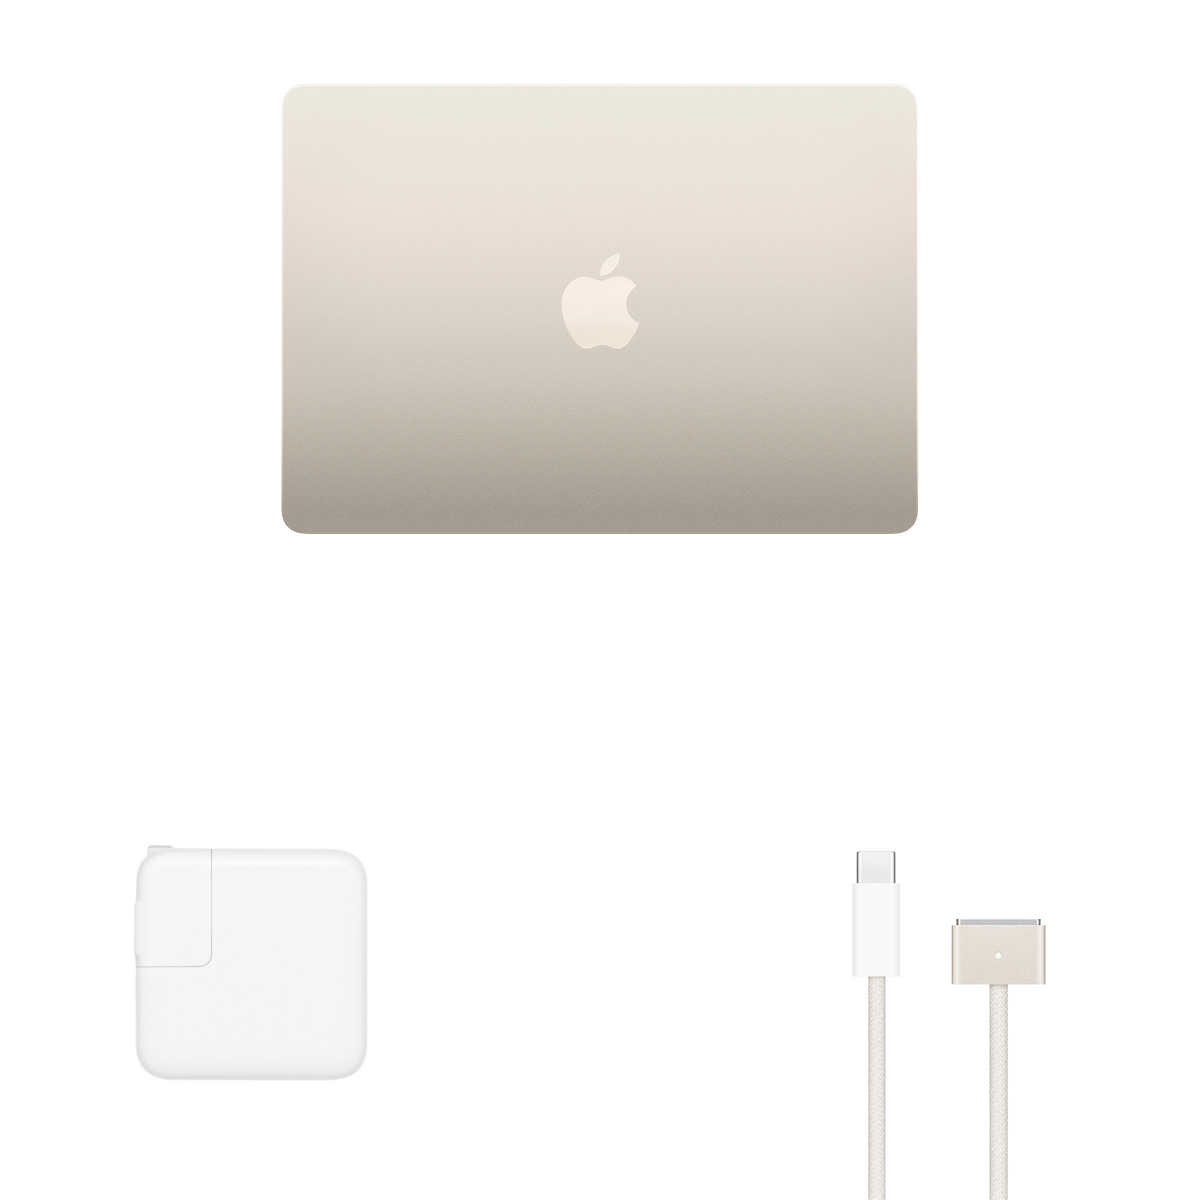 MacBook Air laptop (13.6-inch) - Apple M2 chip, 8-core CPU, 10-core GPU, 8GB memory, 512GB SSD storage